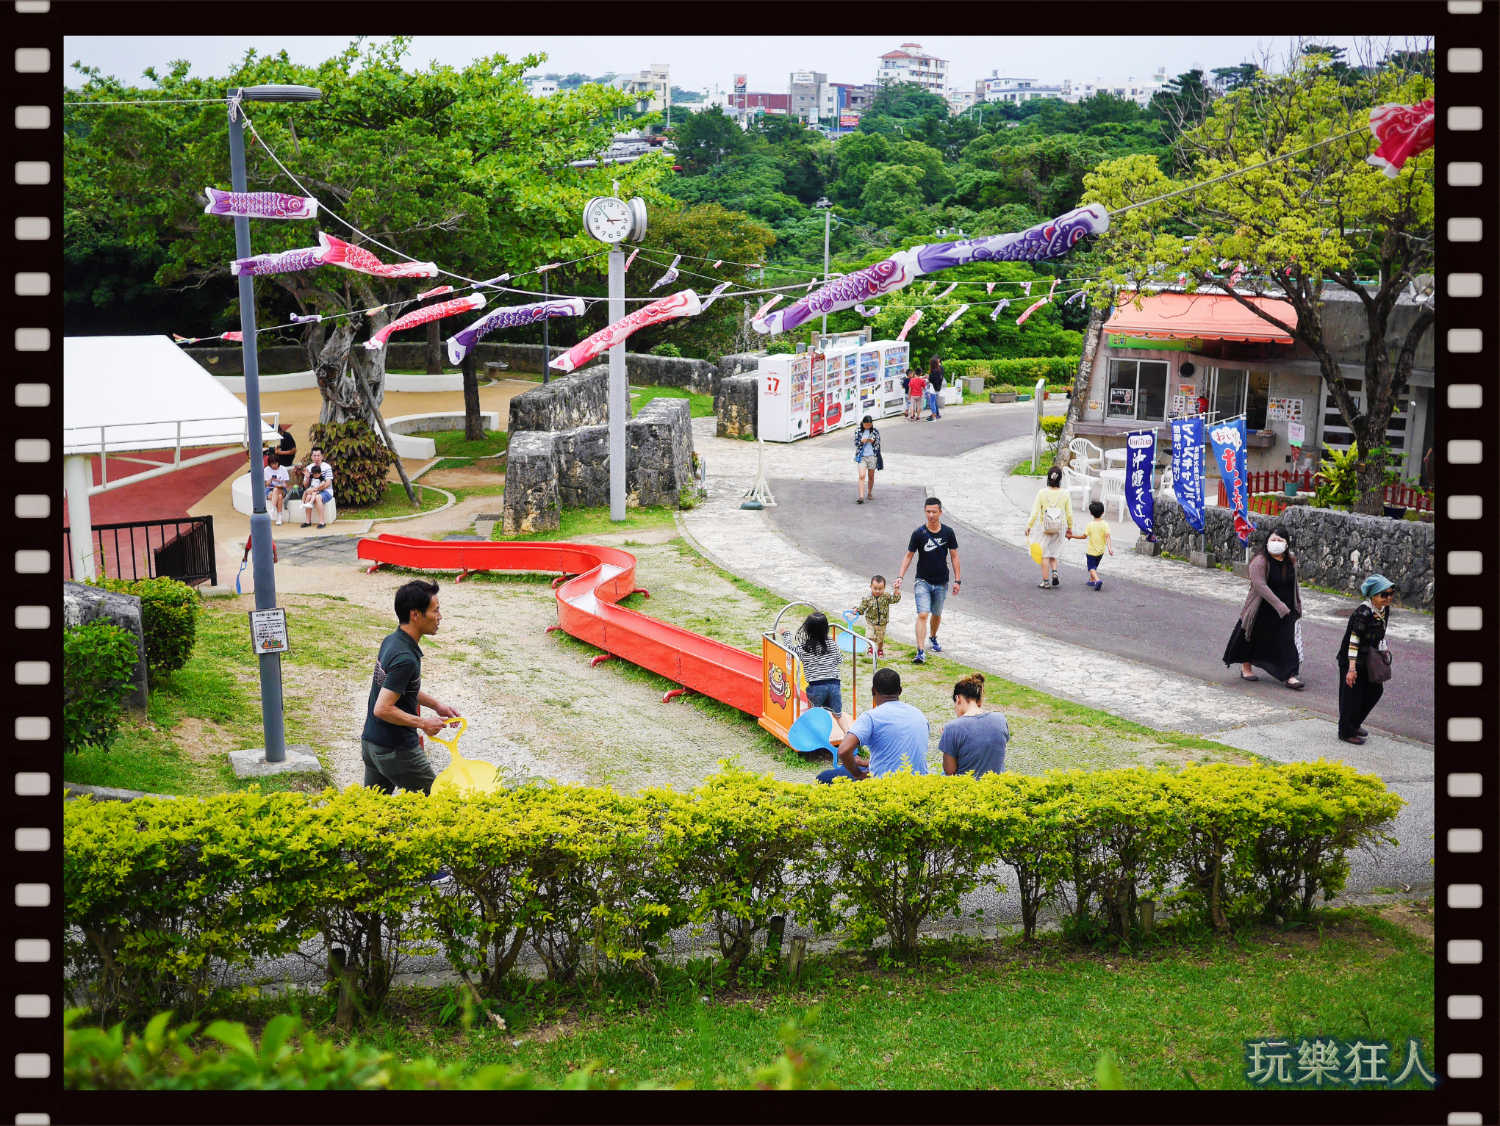 『浦添大公園』小型滾輪溜滑梯